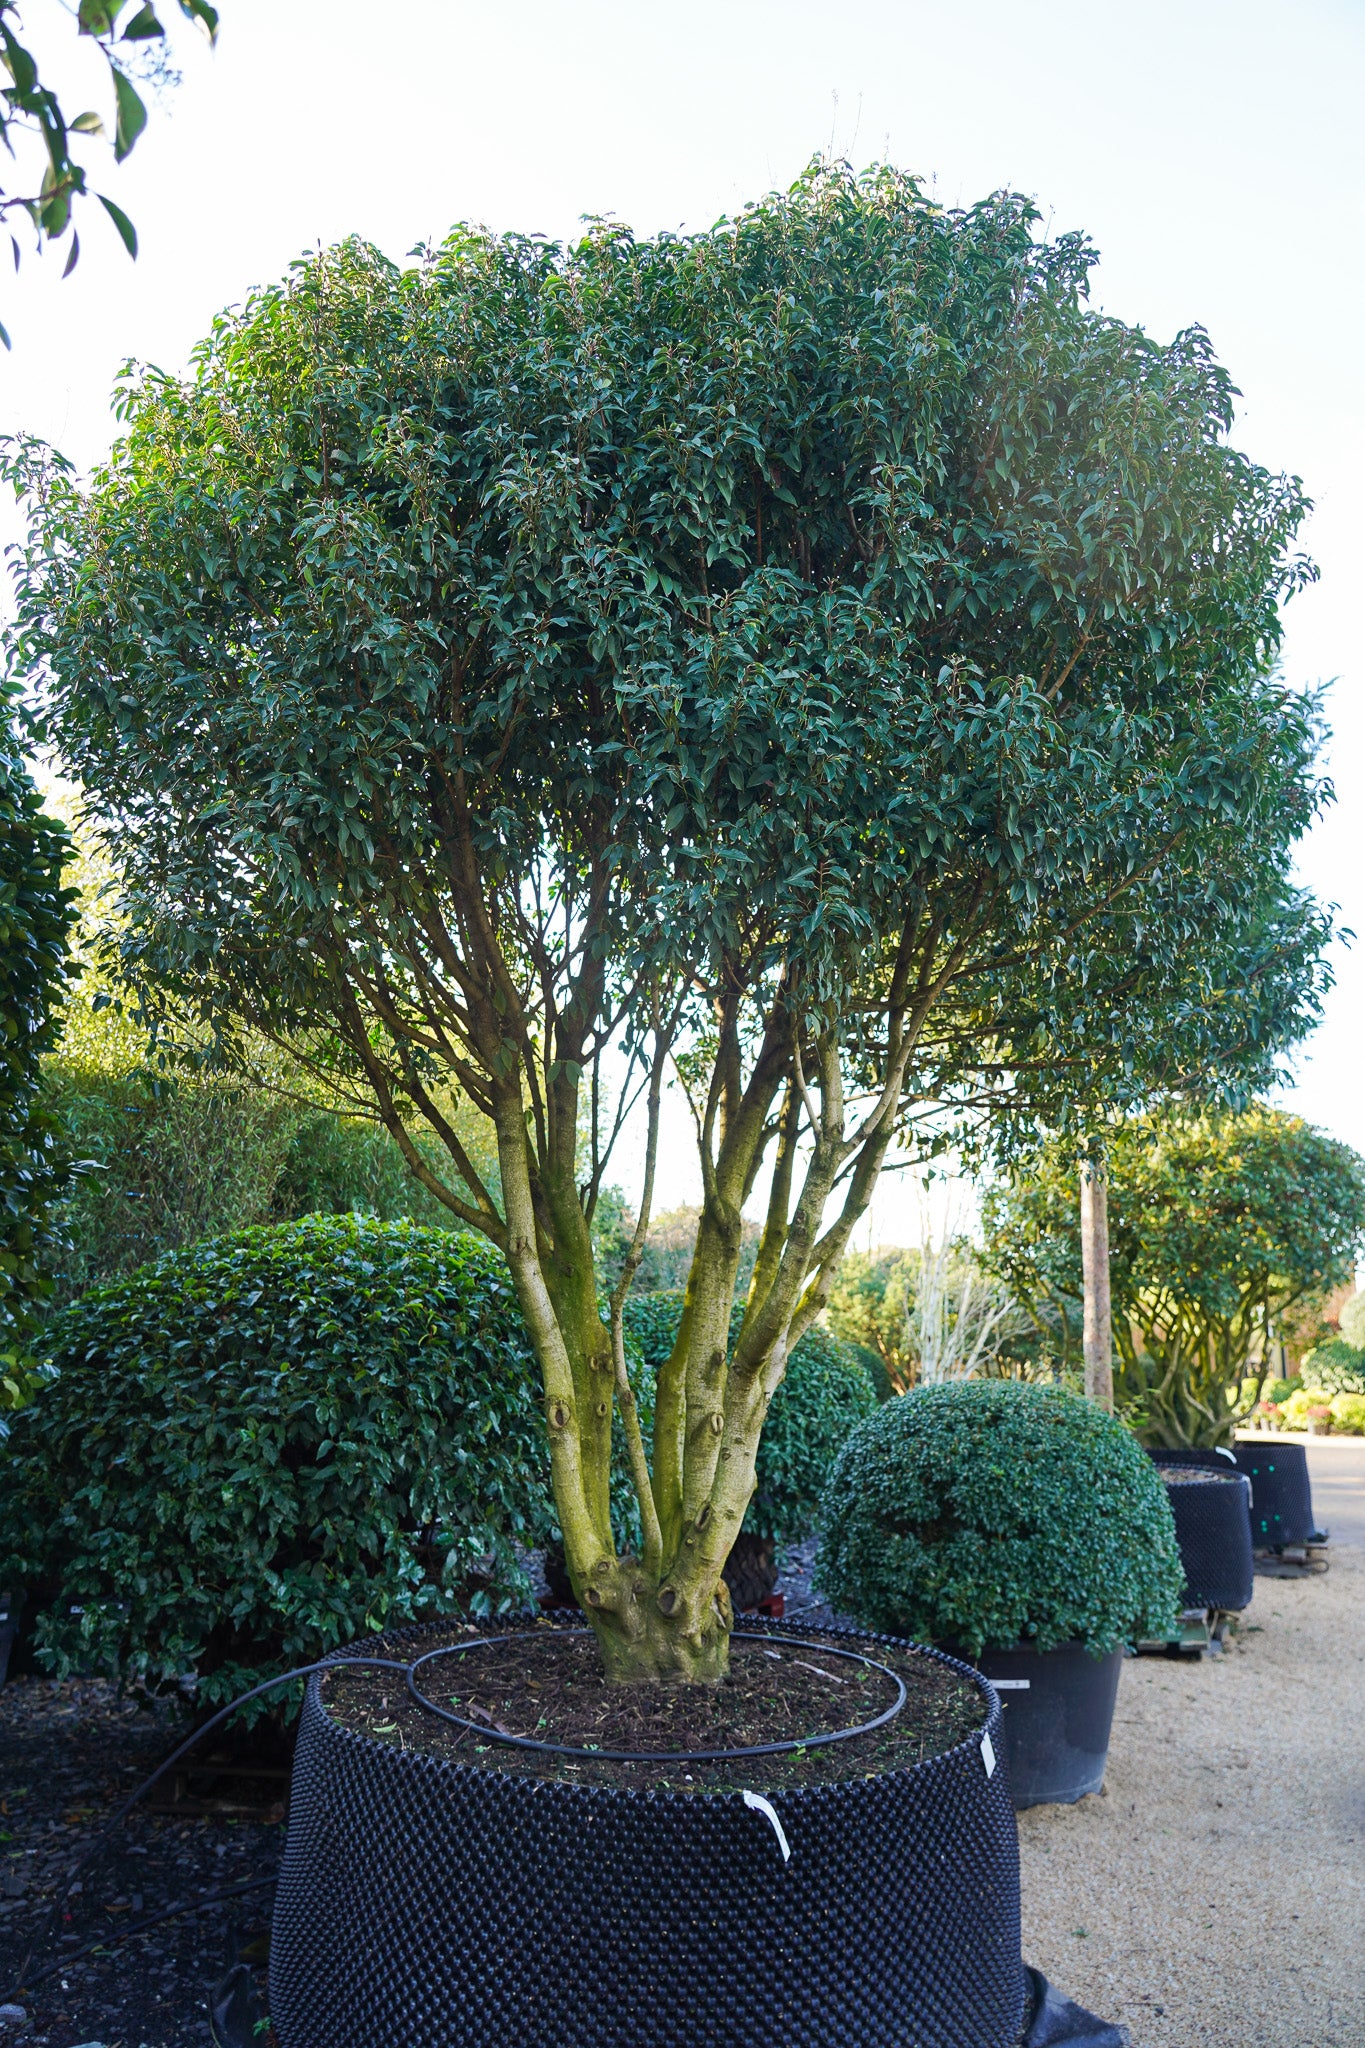 Prunus lusitanica - Portuguese laurel multistem tree